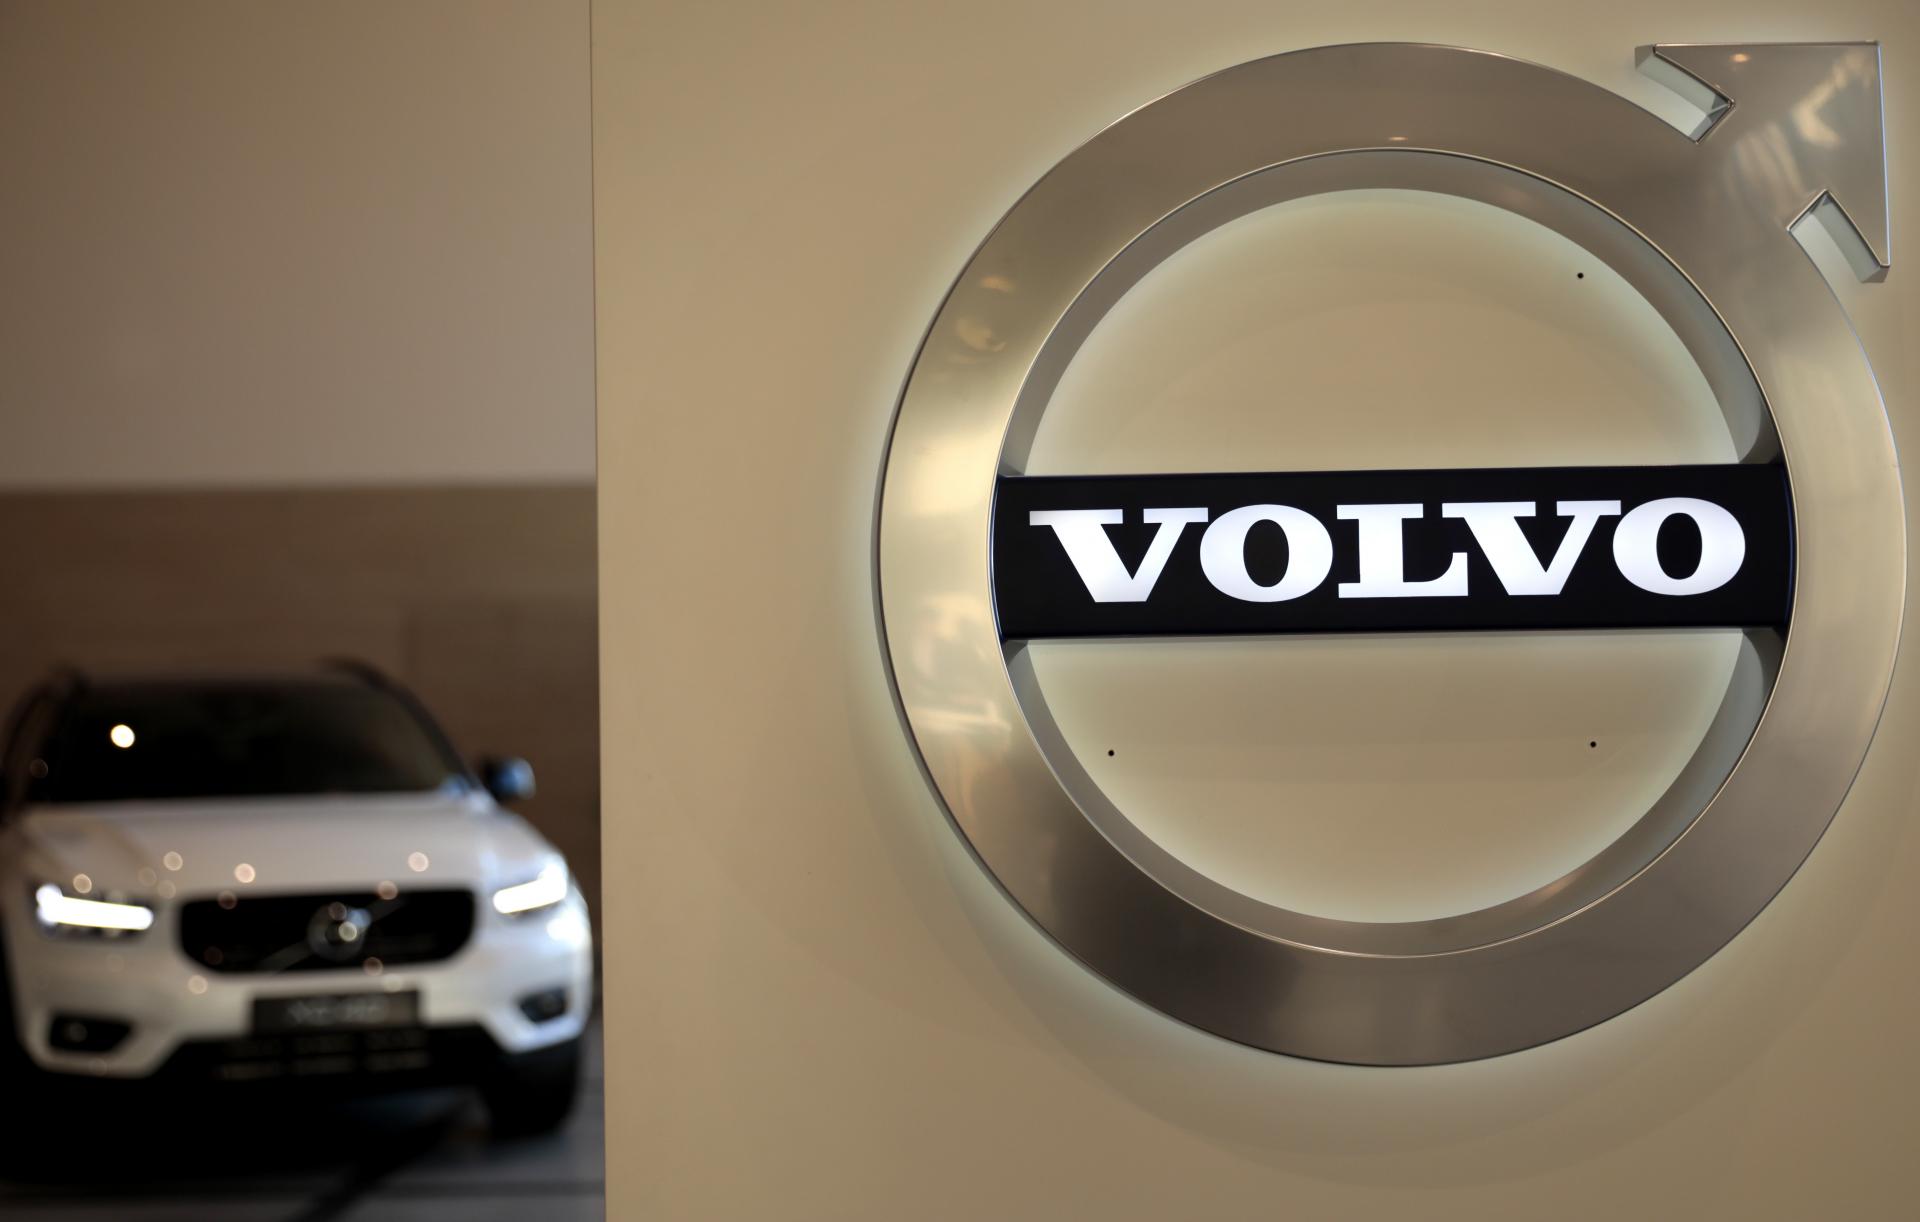 Volvo chcelo byť lídrom v elektromobilite, realita ho tlačí k otočke. Ako to ovplyvní košický závod?